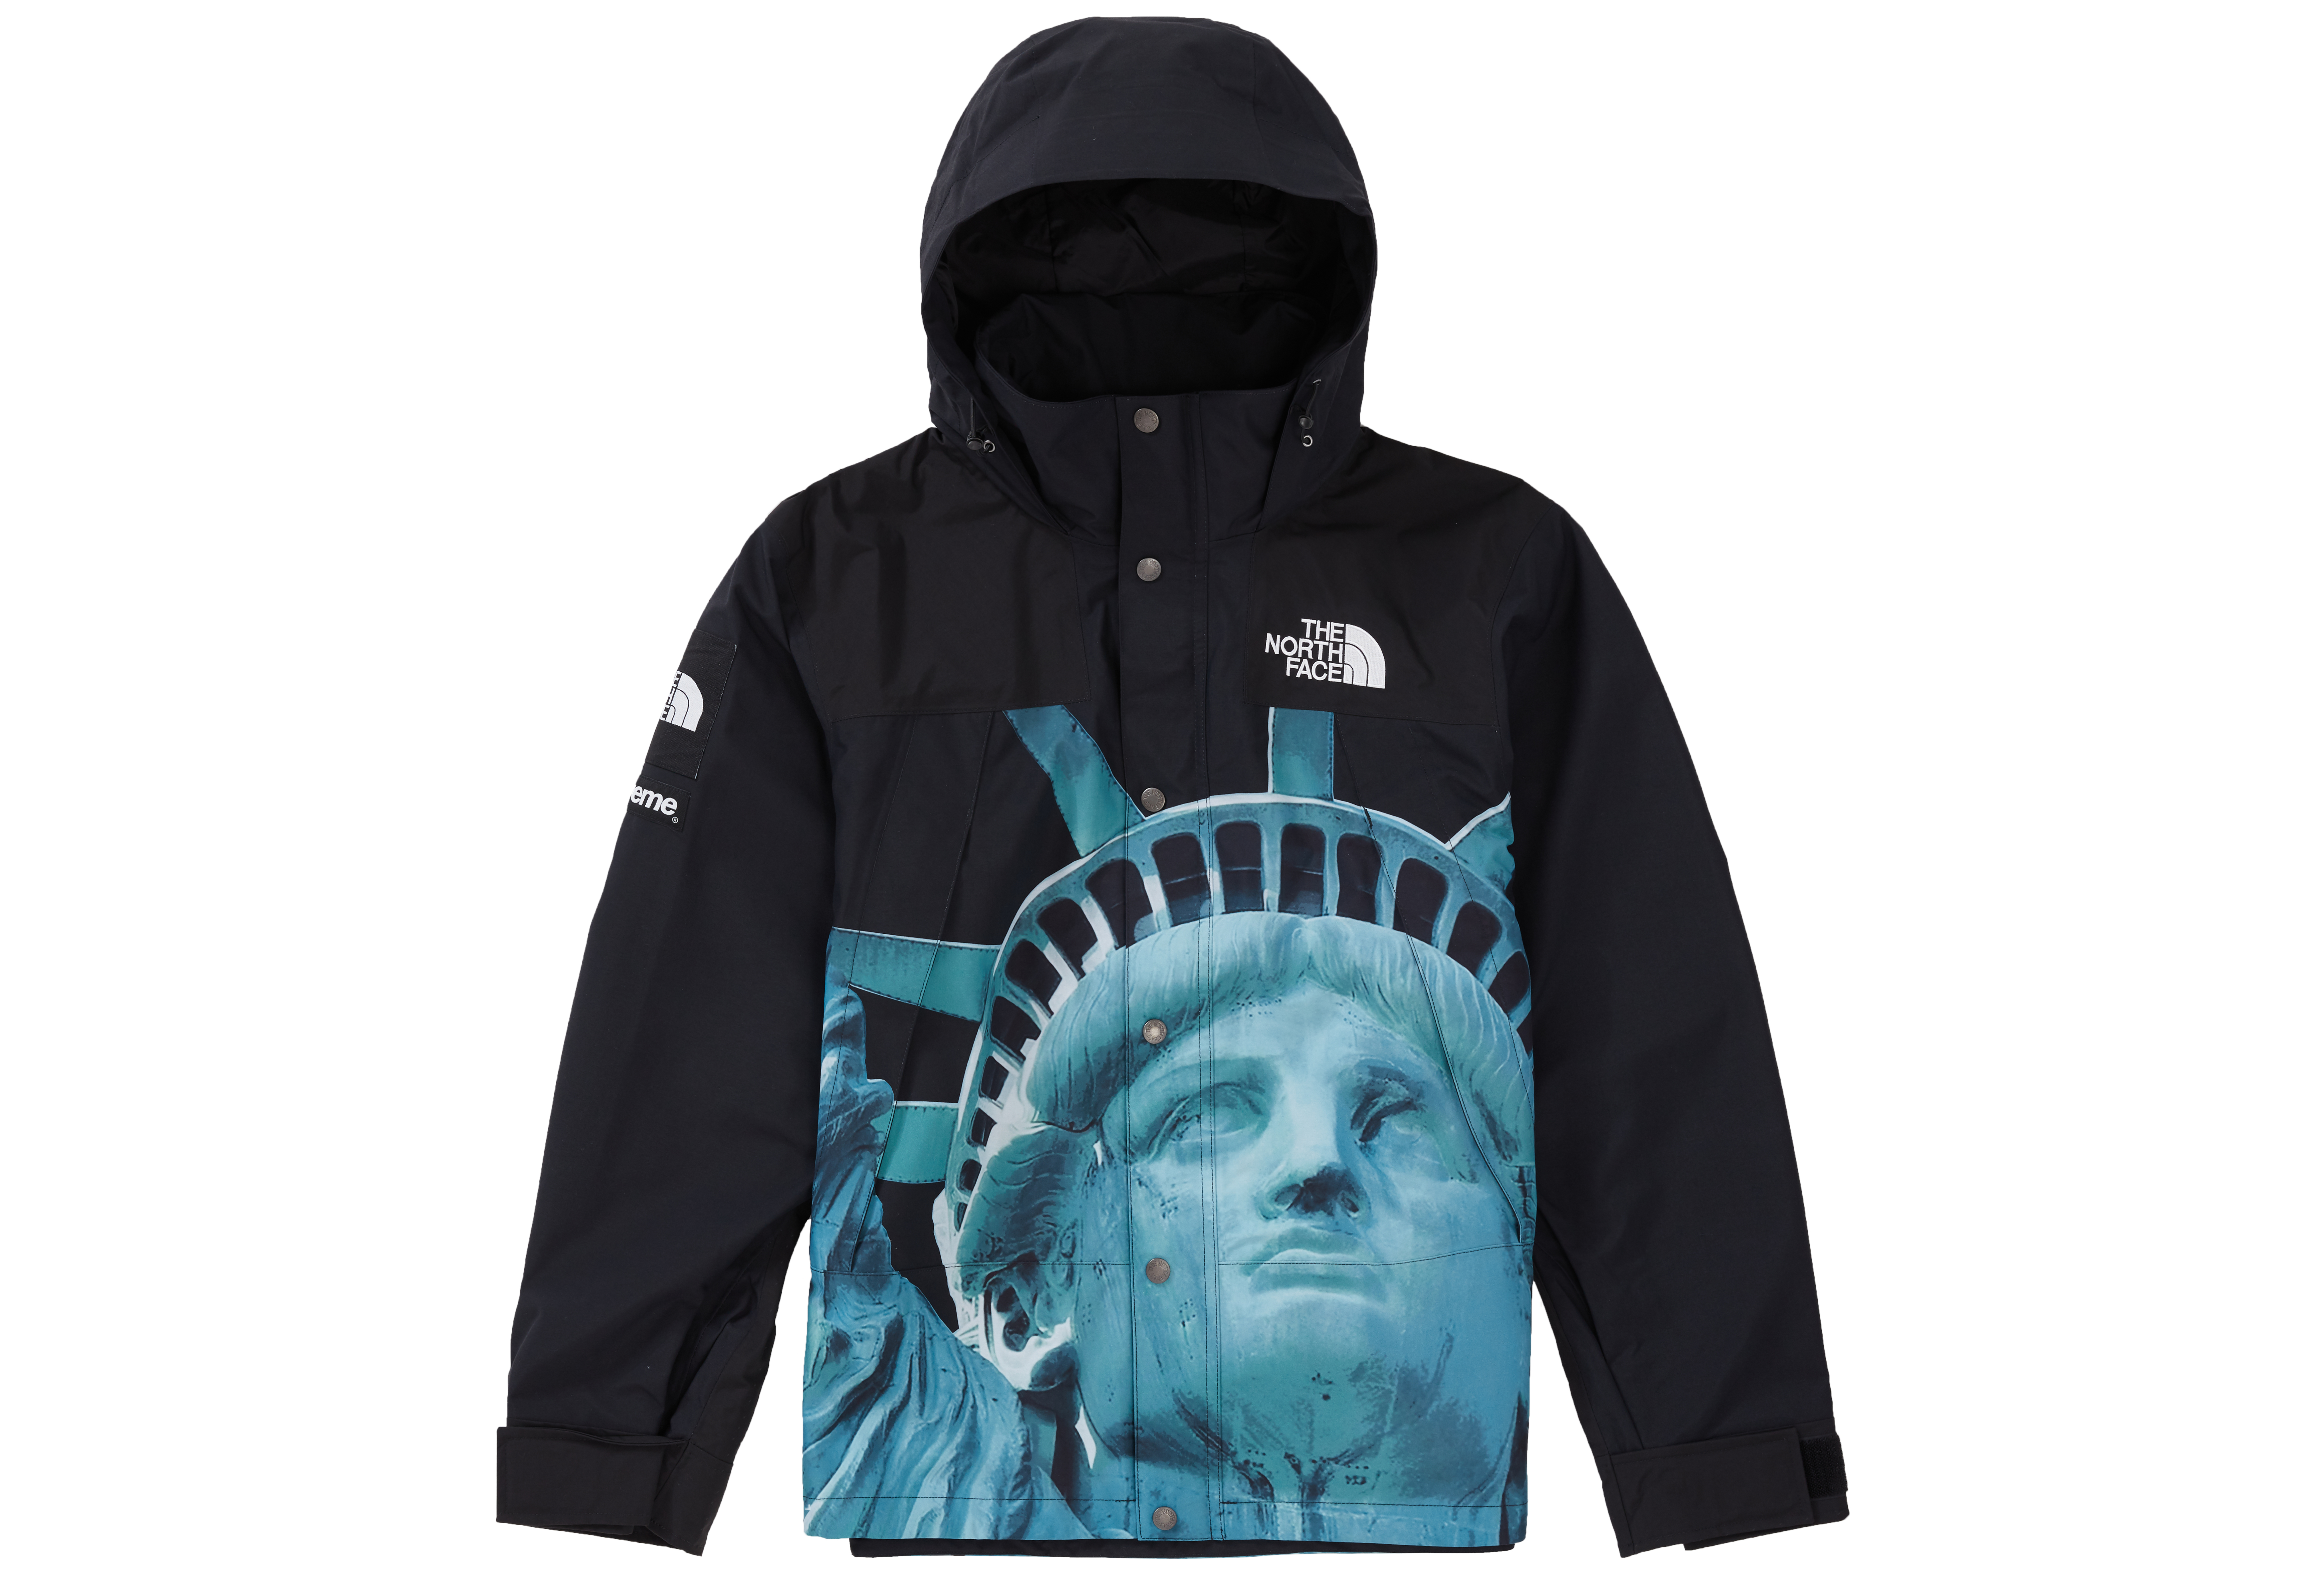 Statue of Liberty Hooded Sweatshirt